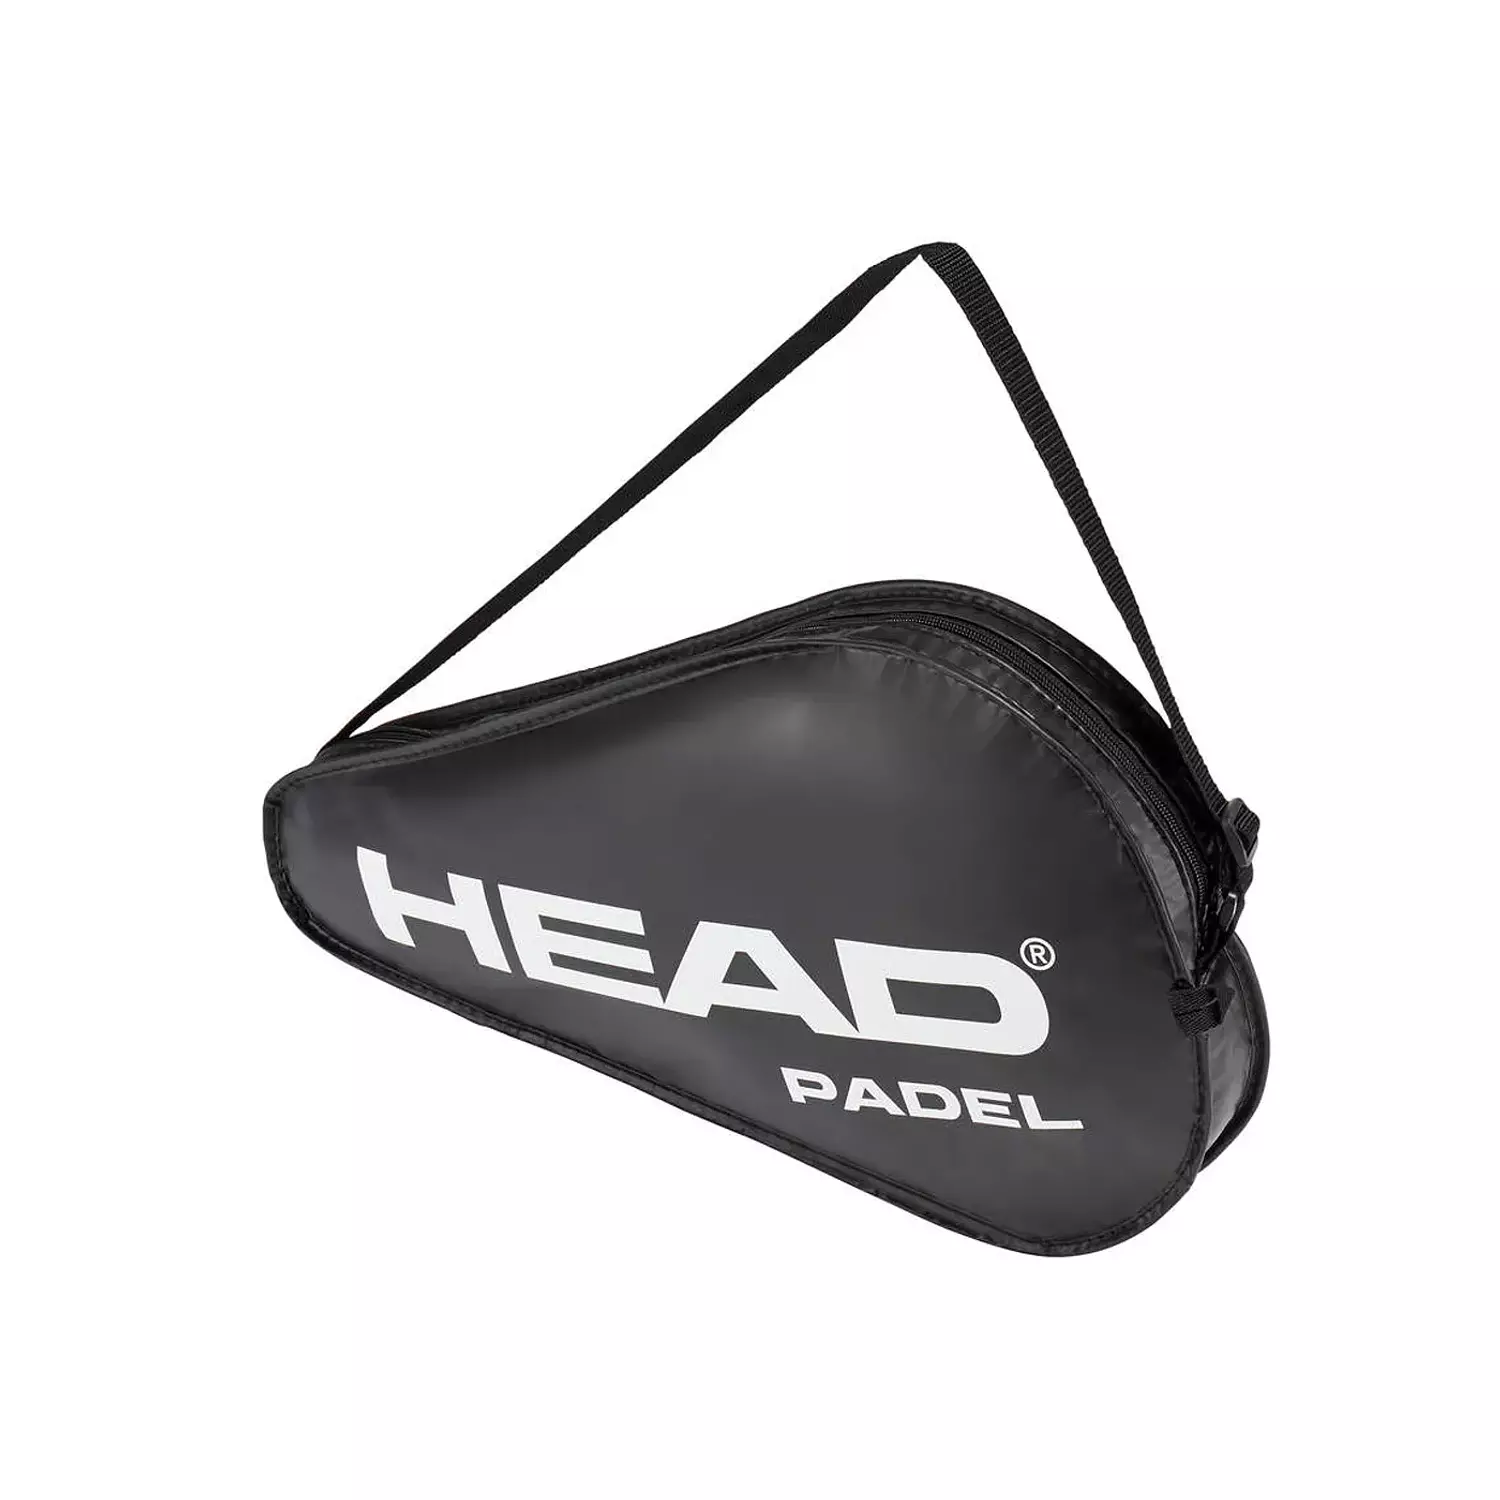 Black Crown | Padel Racket Protector Black